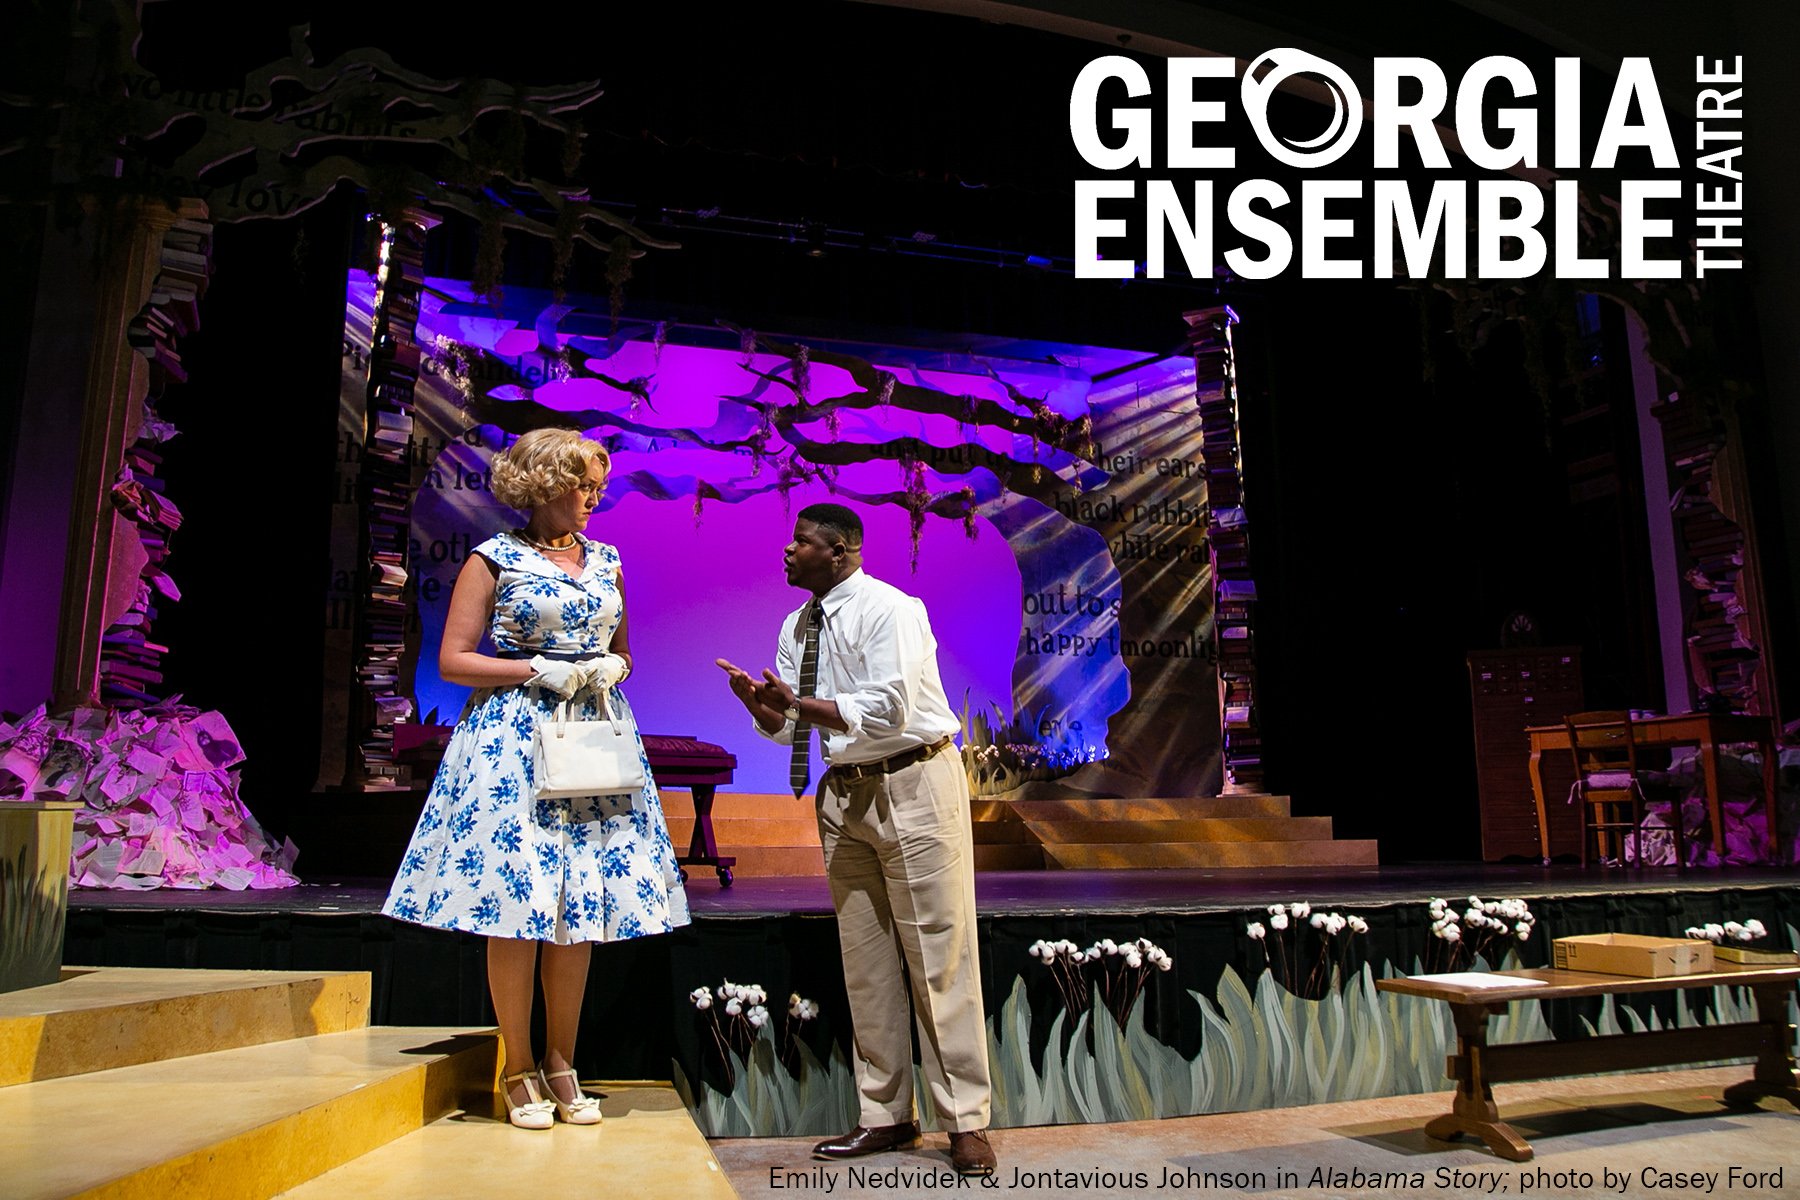 Georgia Ensemble Theatre